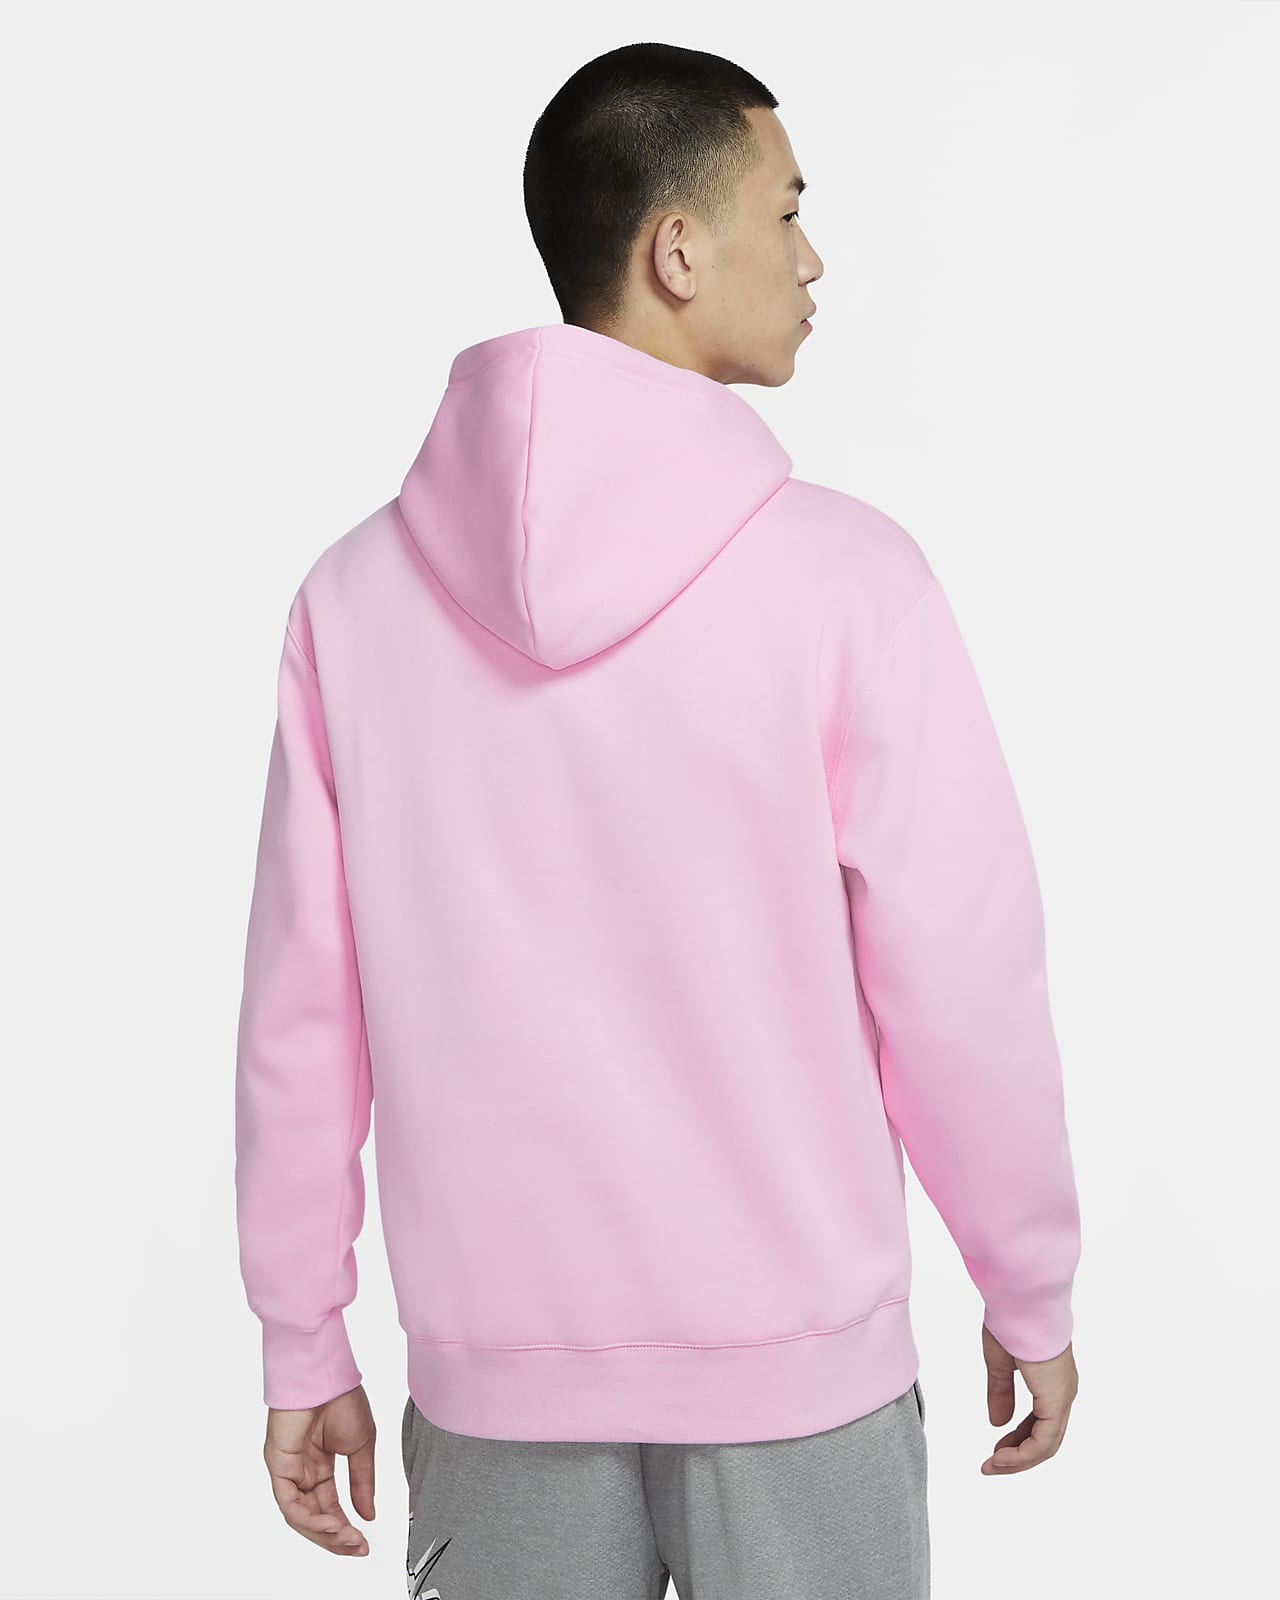 nike men's graphic hoodie